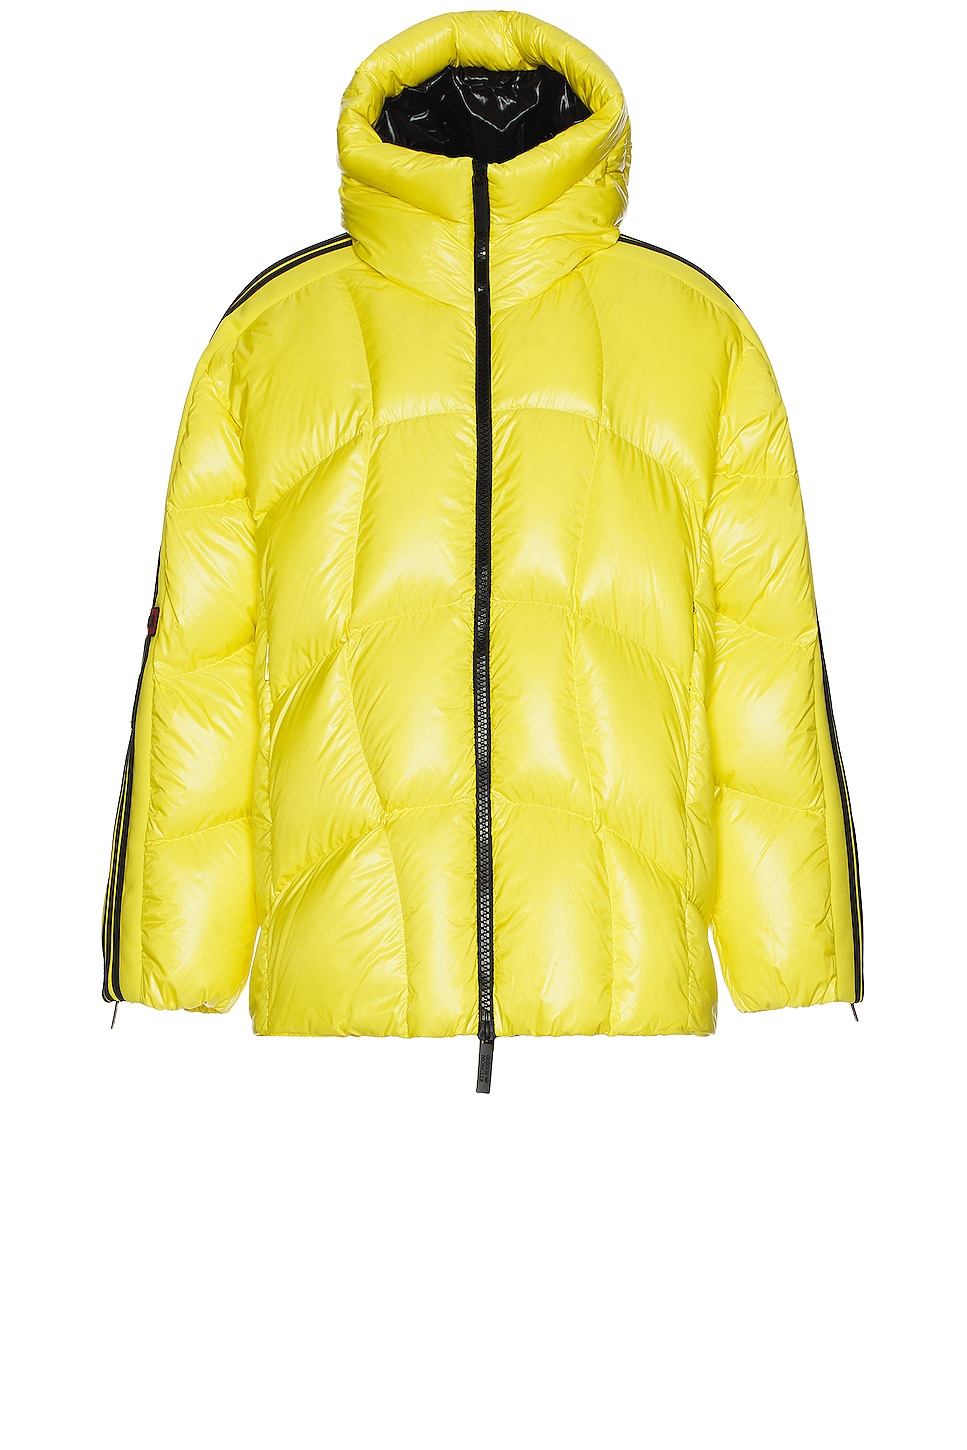 Image 1 of Moncler Genius x Adidas Beiser Jacket in Yellow